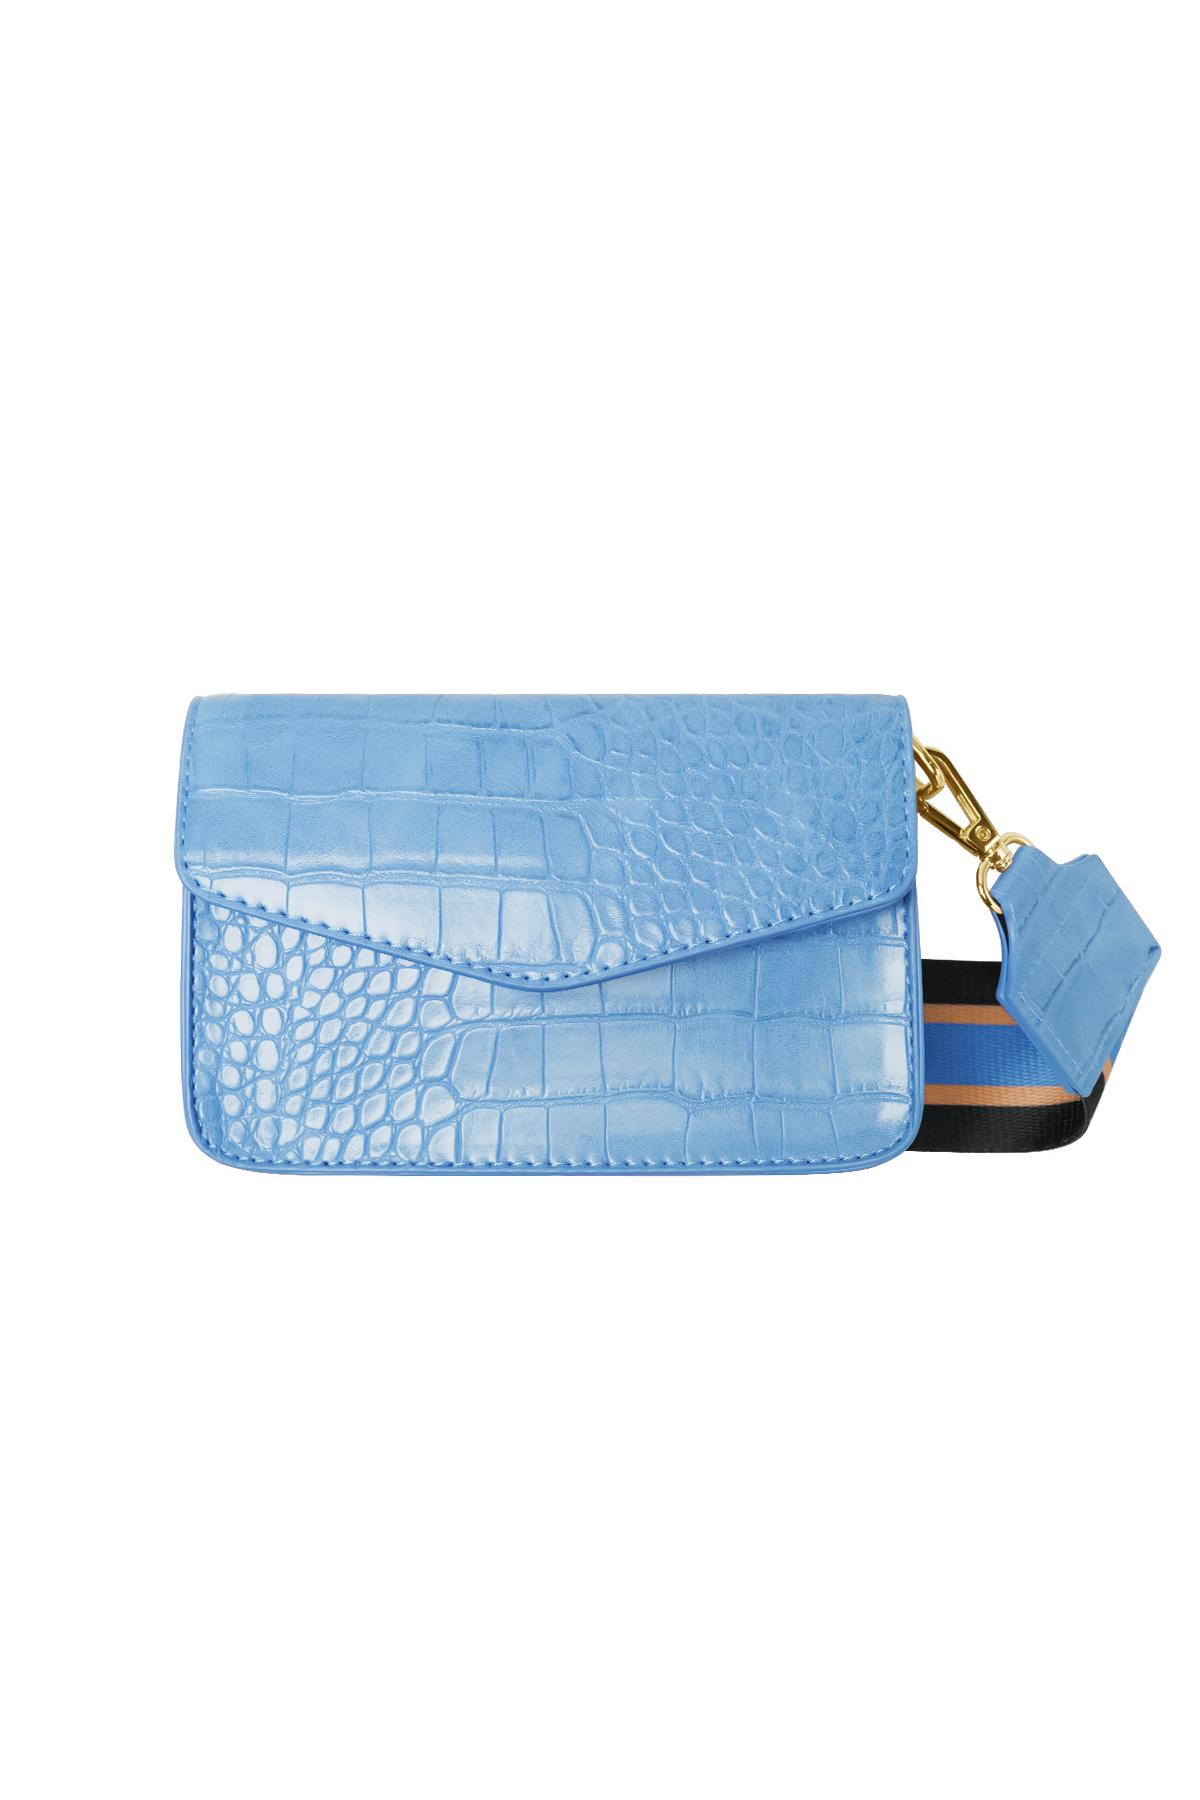 Kleine croco tas met brede tassen strap Blauw PU